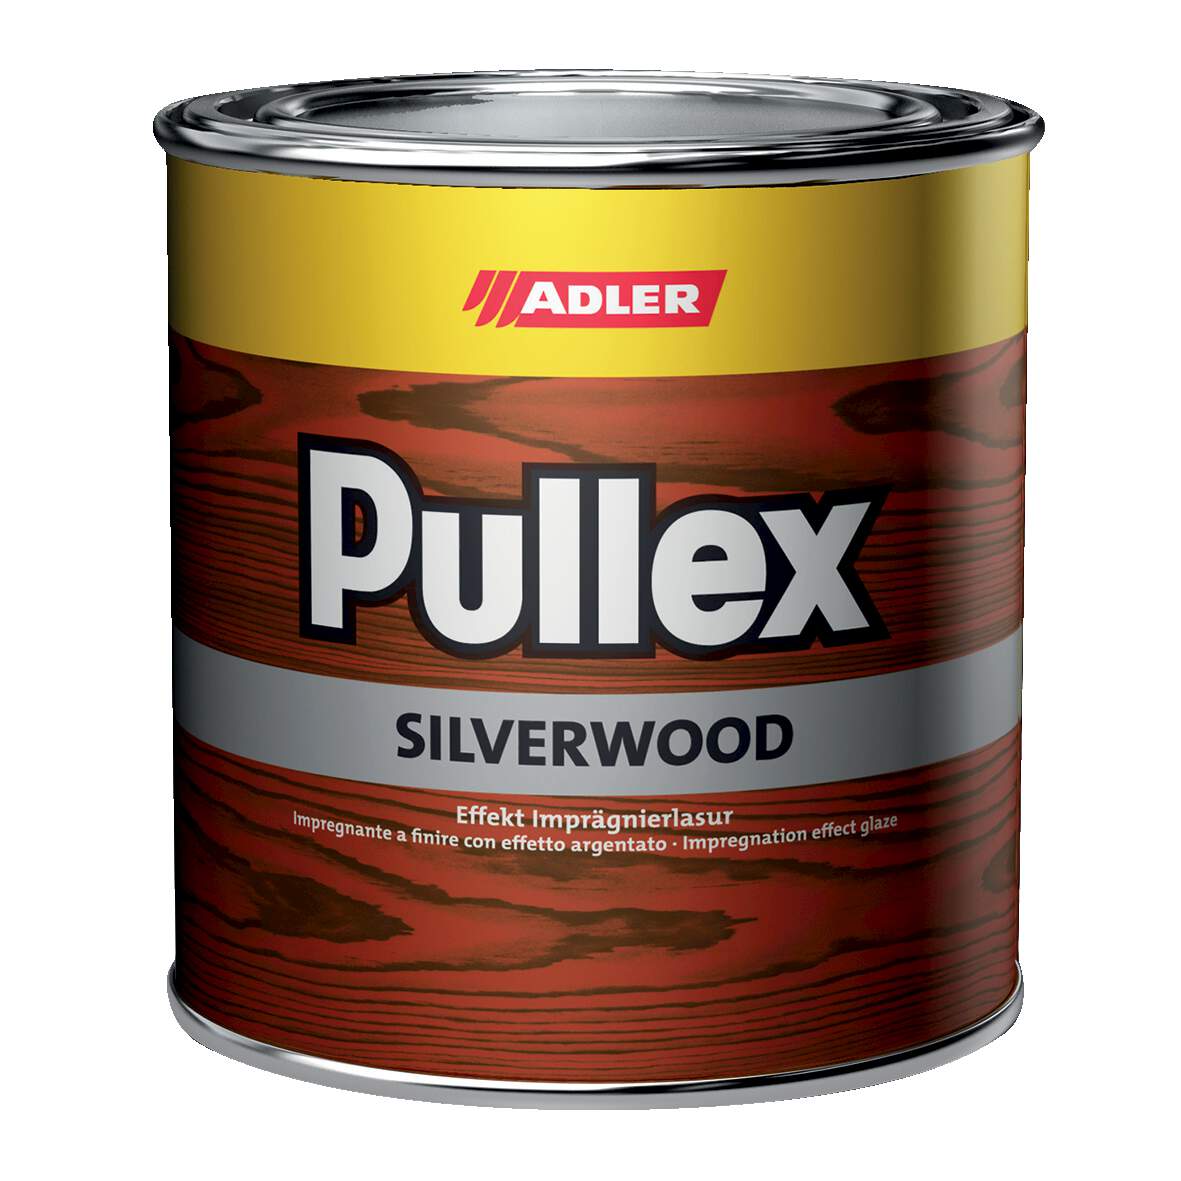 1095628 - Pullex-Silverwood farbl. 750ml